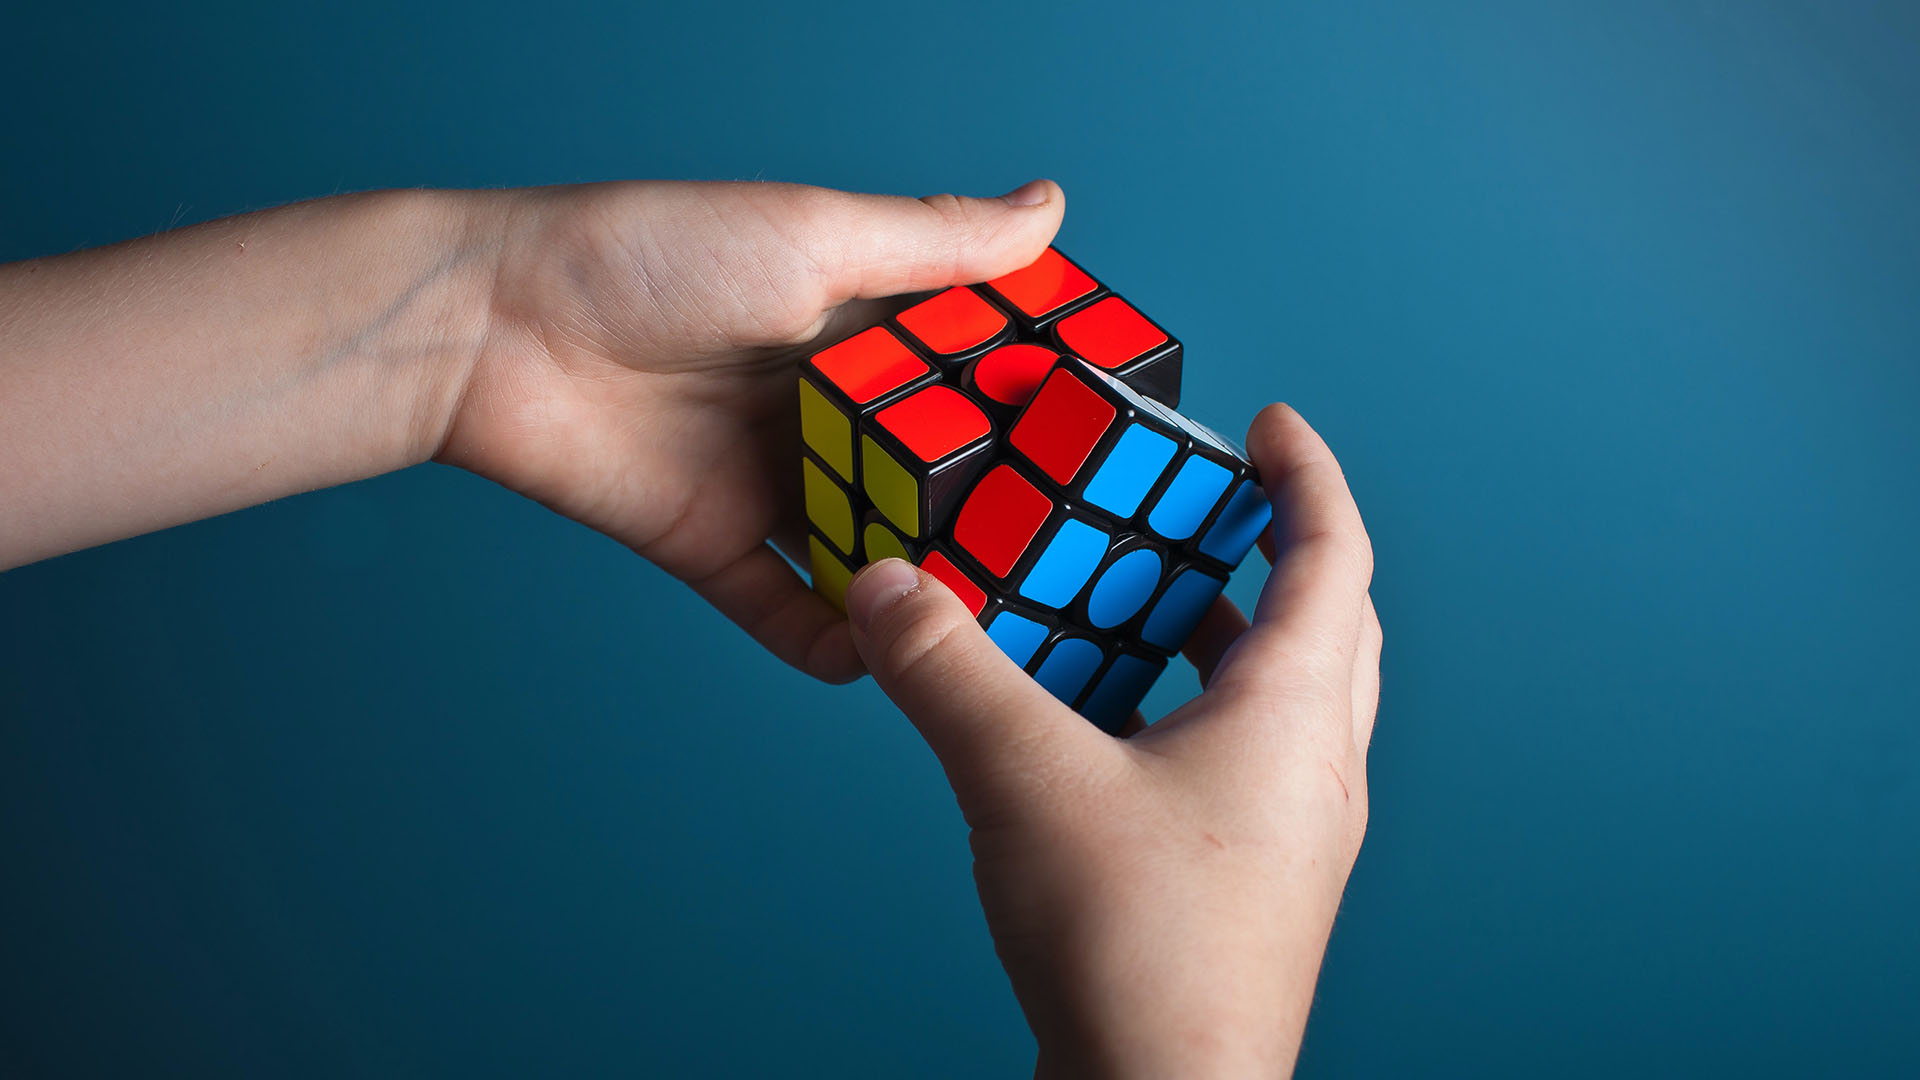 El cubo de Rubik requiere concentración, lo que crea una oportunidad excepcional para desconectar de nuestras preocupaciones y concentrarnos. La dificultad de su resolución también tiene efectos positivos en nuestra mente: ayuda a desarrollar nuestra paciencia y perseverar, con una gran recompensa una vez logramos terminarlo. 